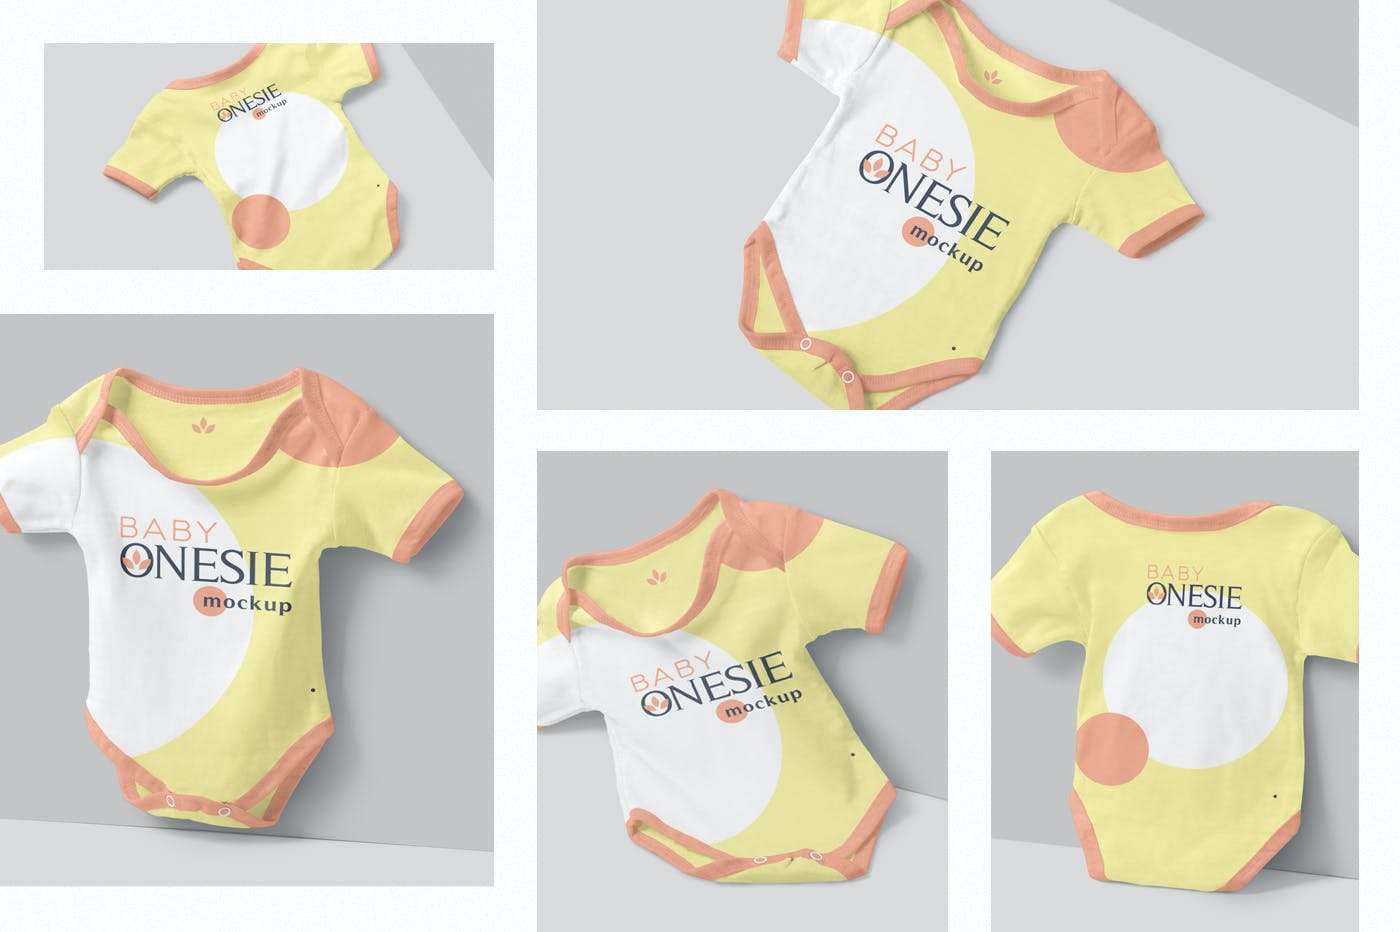 新生儿婴儿服装婴儿连体衣样机模版素材 2ELHMWD插图1